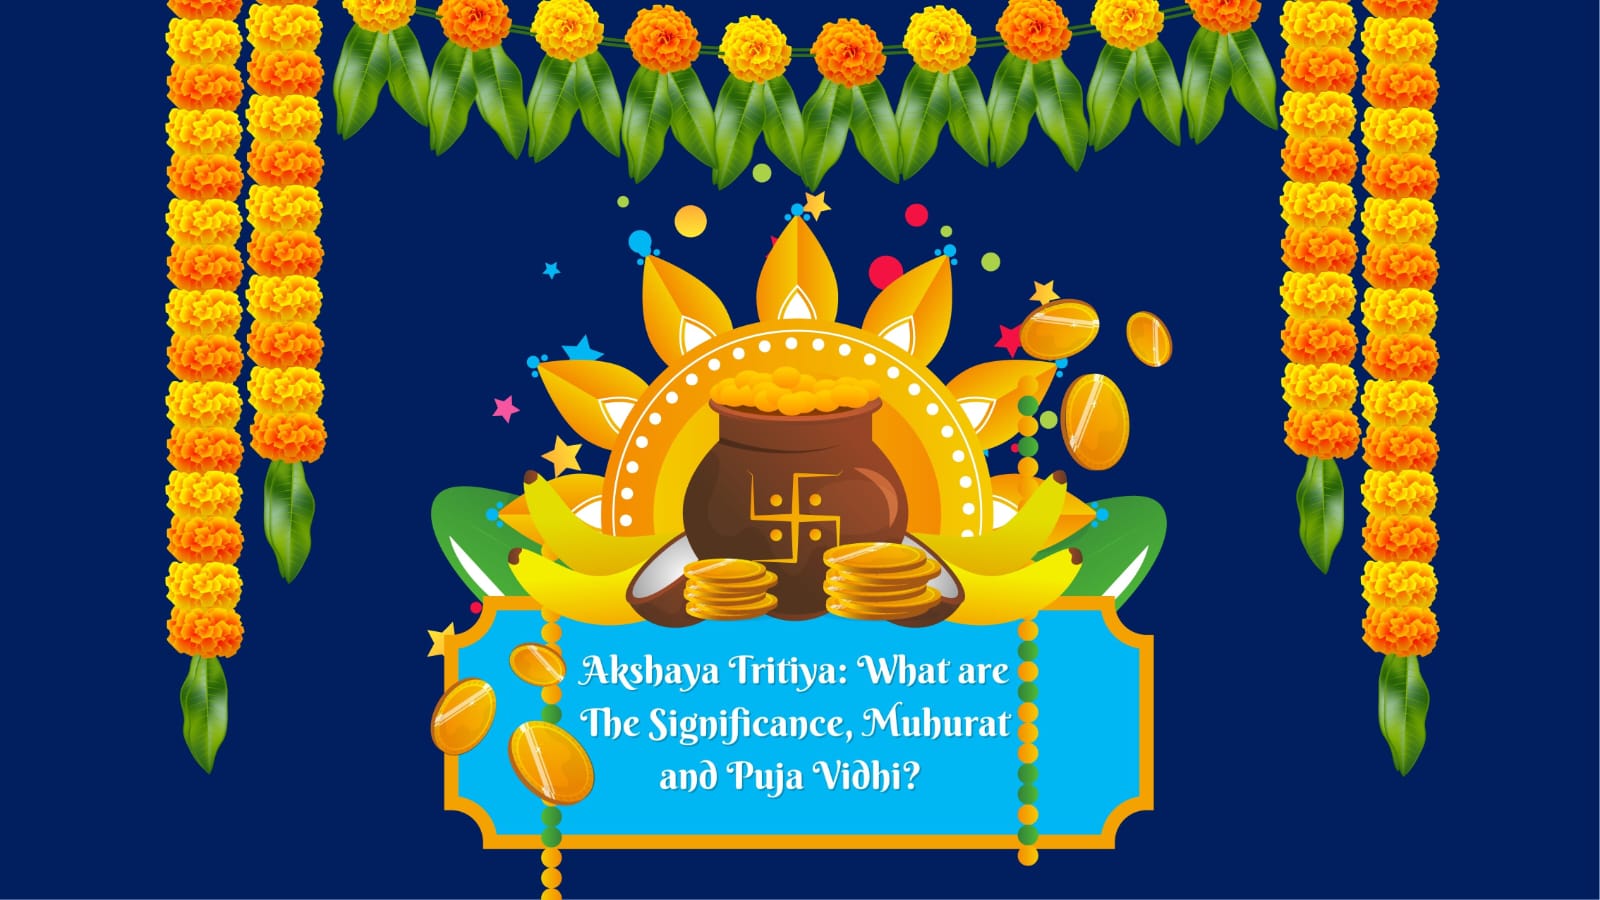 Akshaya Tritiya: What are The Significance, Muhurat and Puja Vidhi